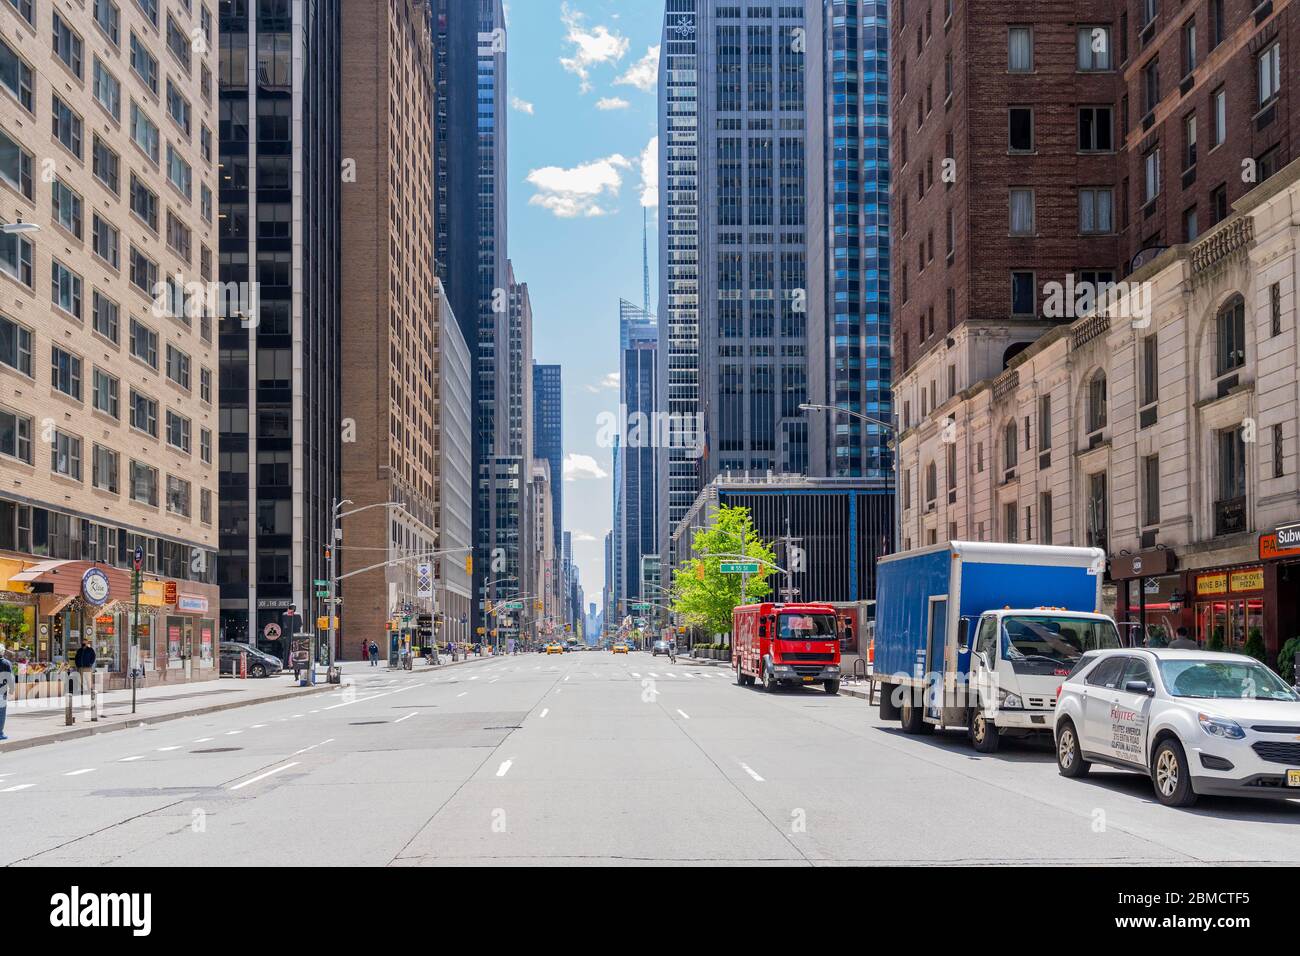 Manhattan, Nueva York - 7 de mayo de 2020: Calles inusualmente vacías de la Ciudad de Nueva York de la Sexta Avenida durante el brote pandémico de COVID-19. Foto de stock